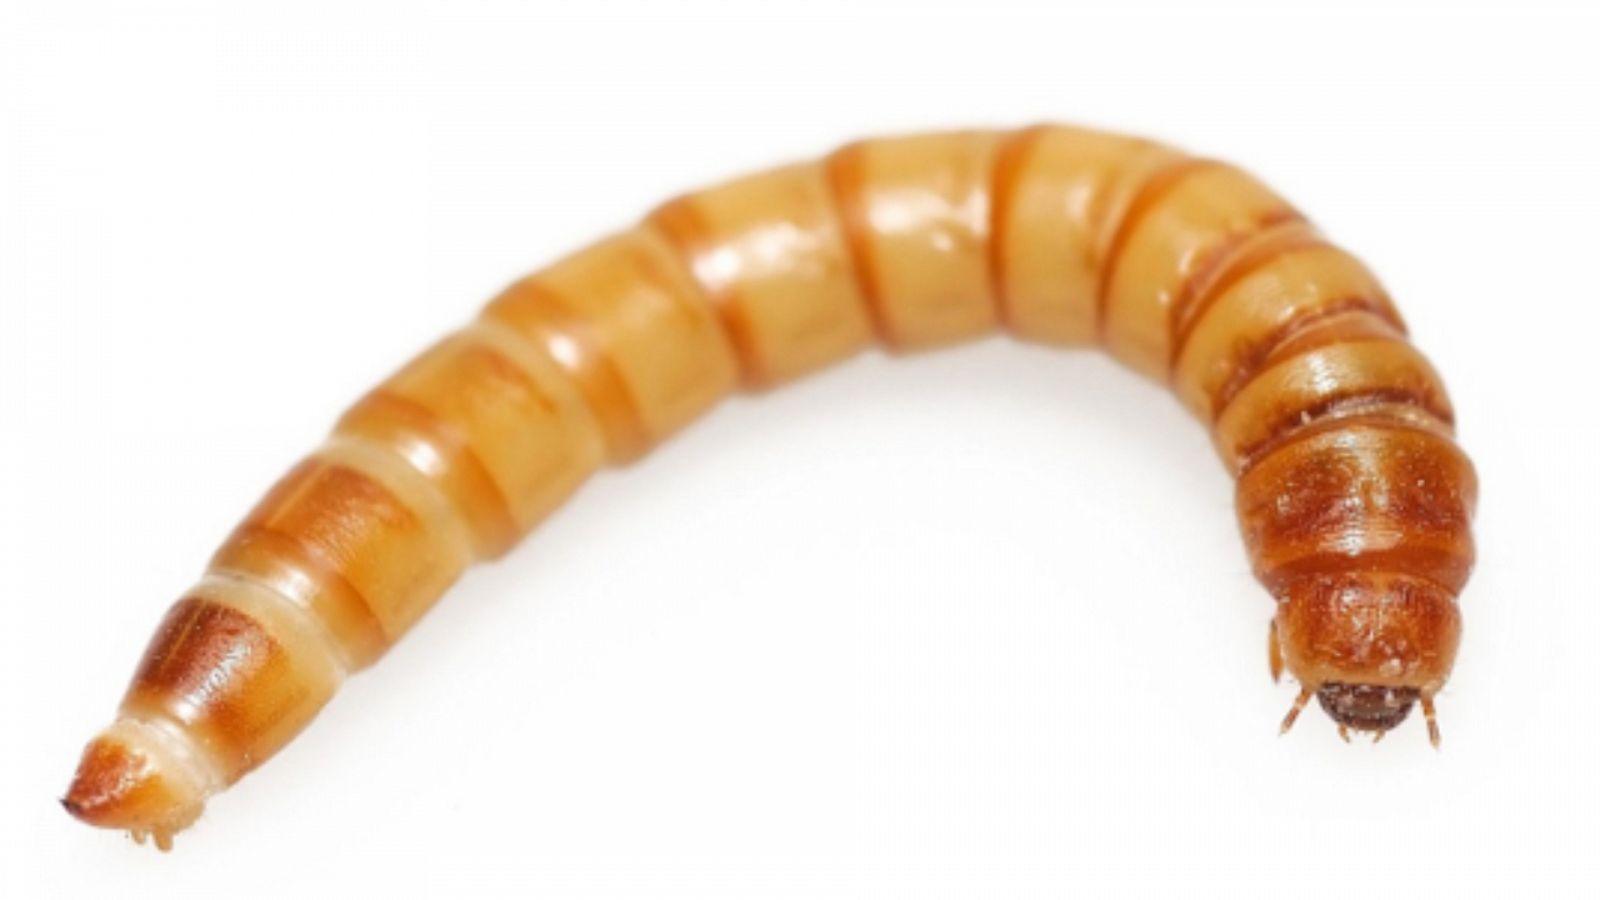 Órbita Laika - Curiosidades científicas - el gusano de la harina